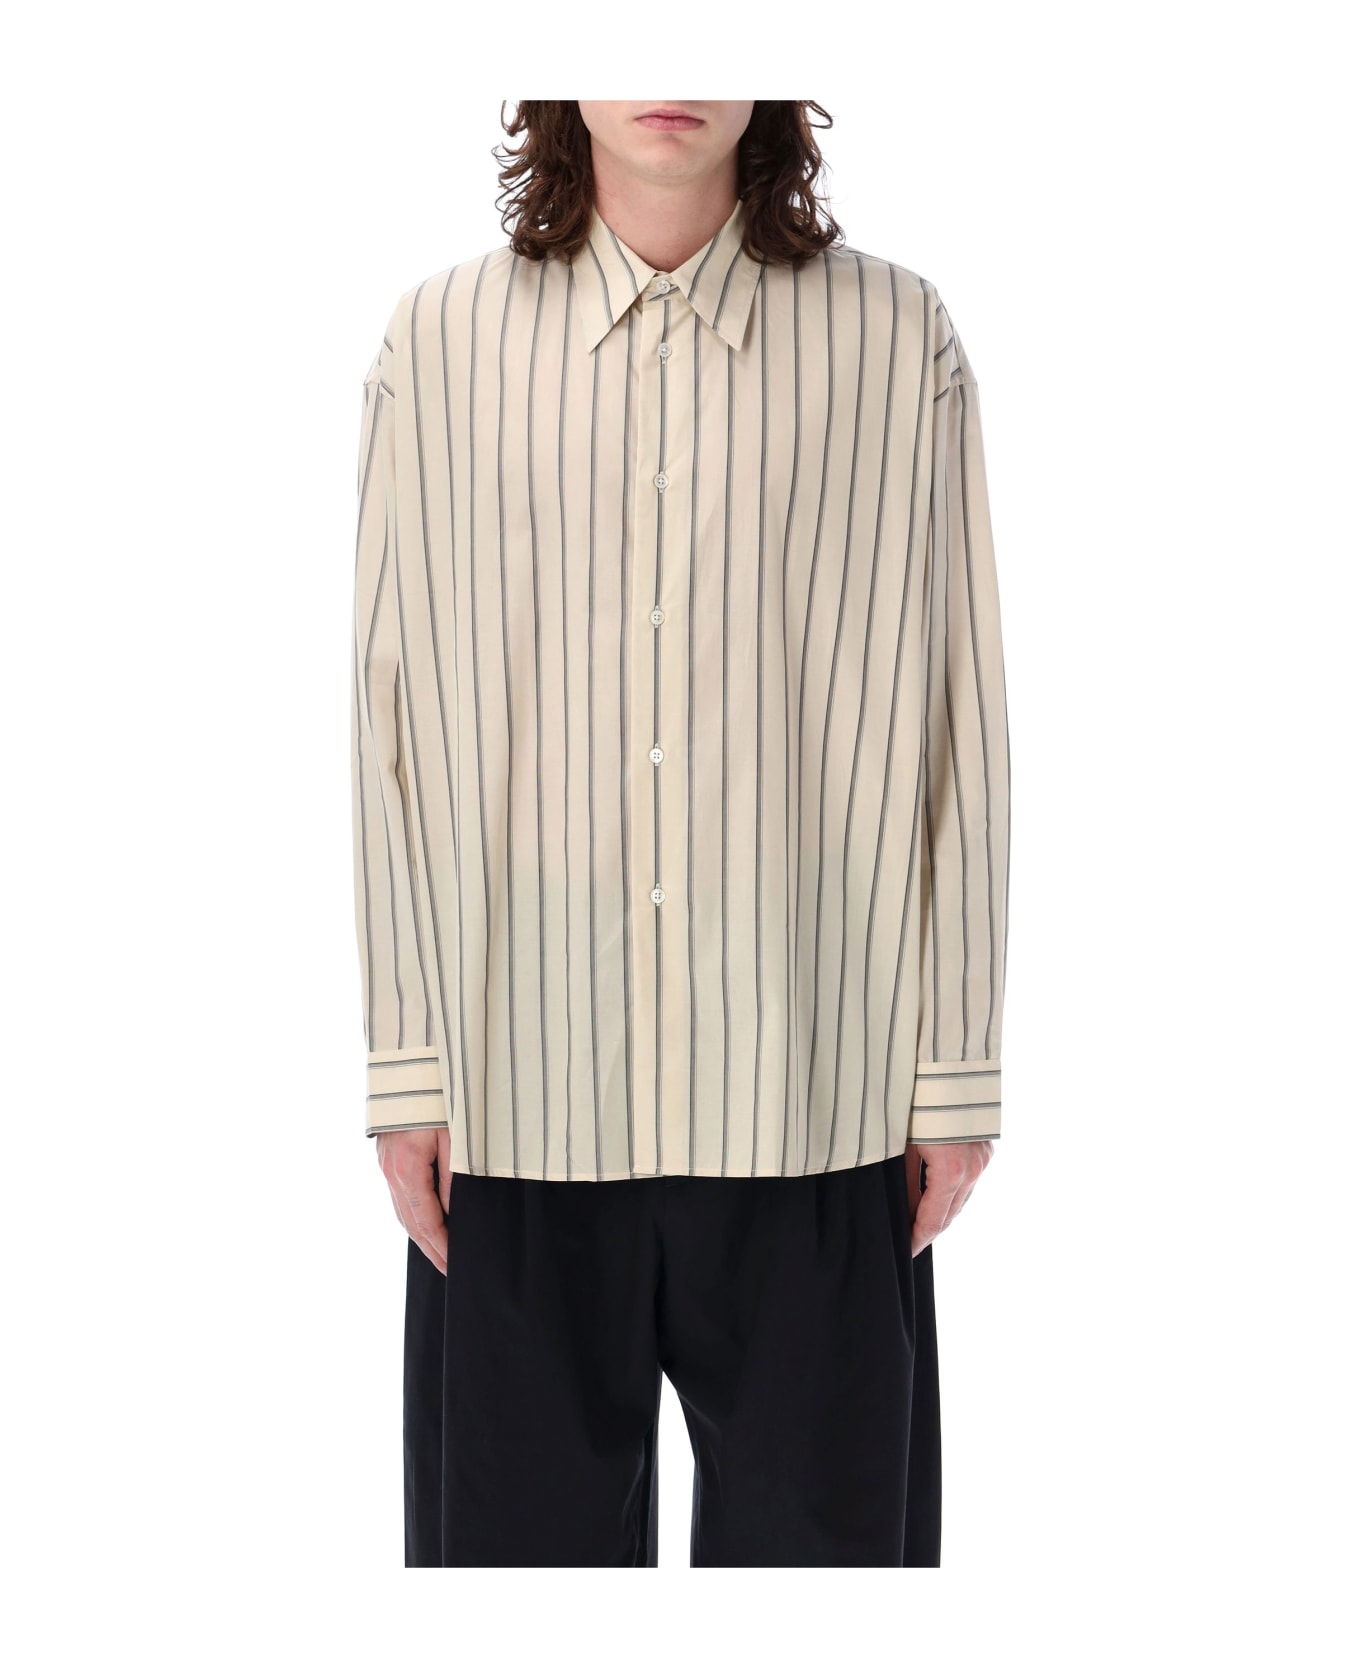 Studio Nicholson Loche Shirt - SOFT PLASTER シャツ